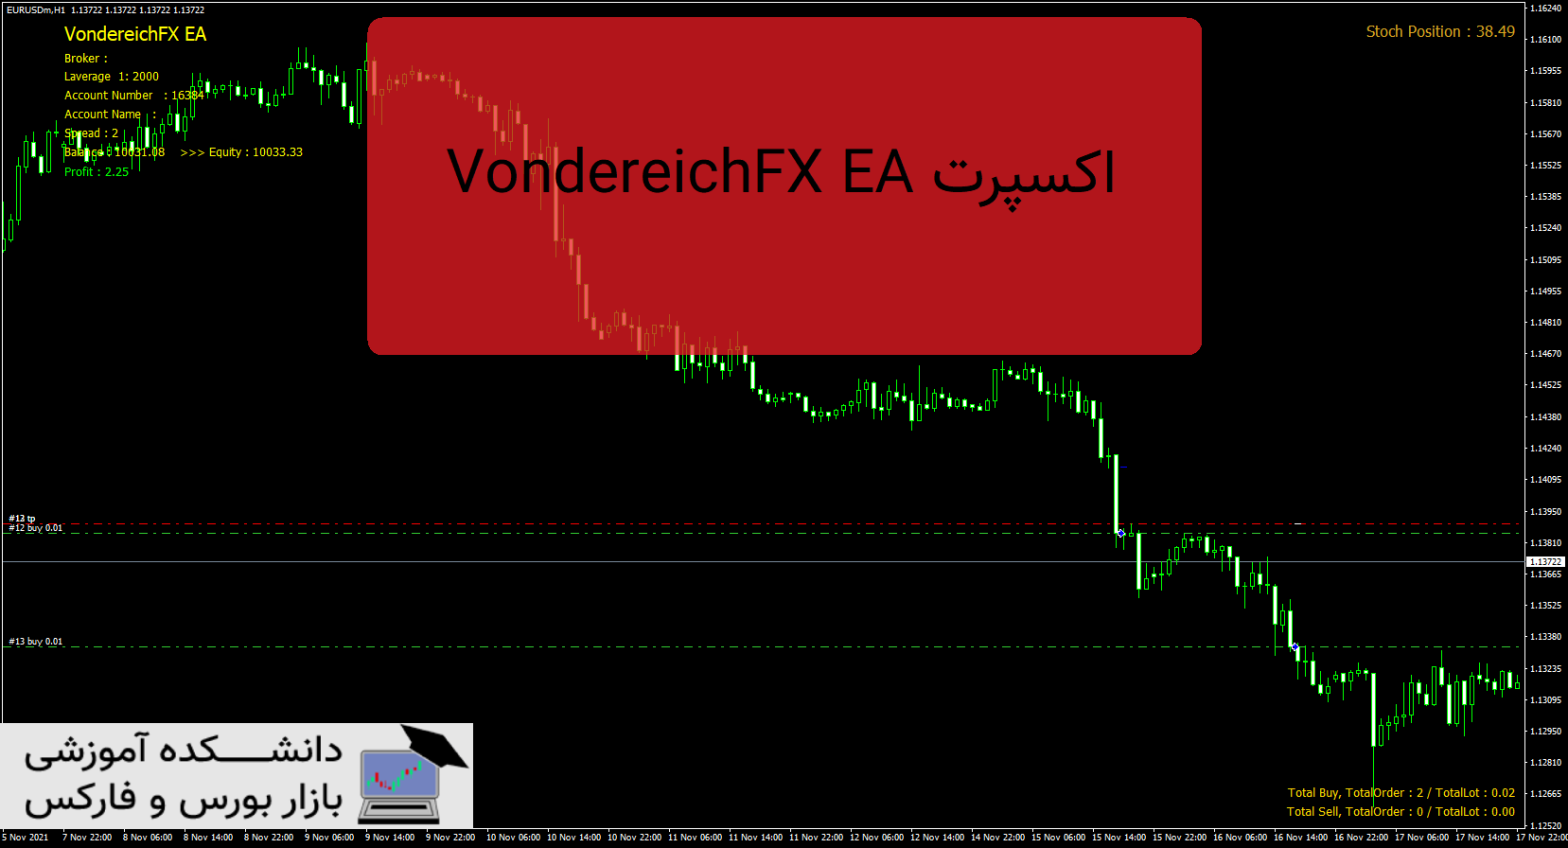 VondereichFX EA دانلود و معرفی اکسپرت